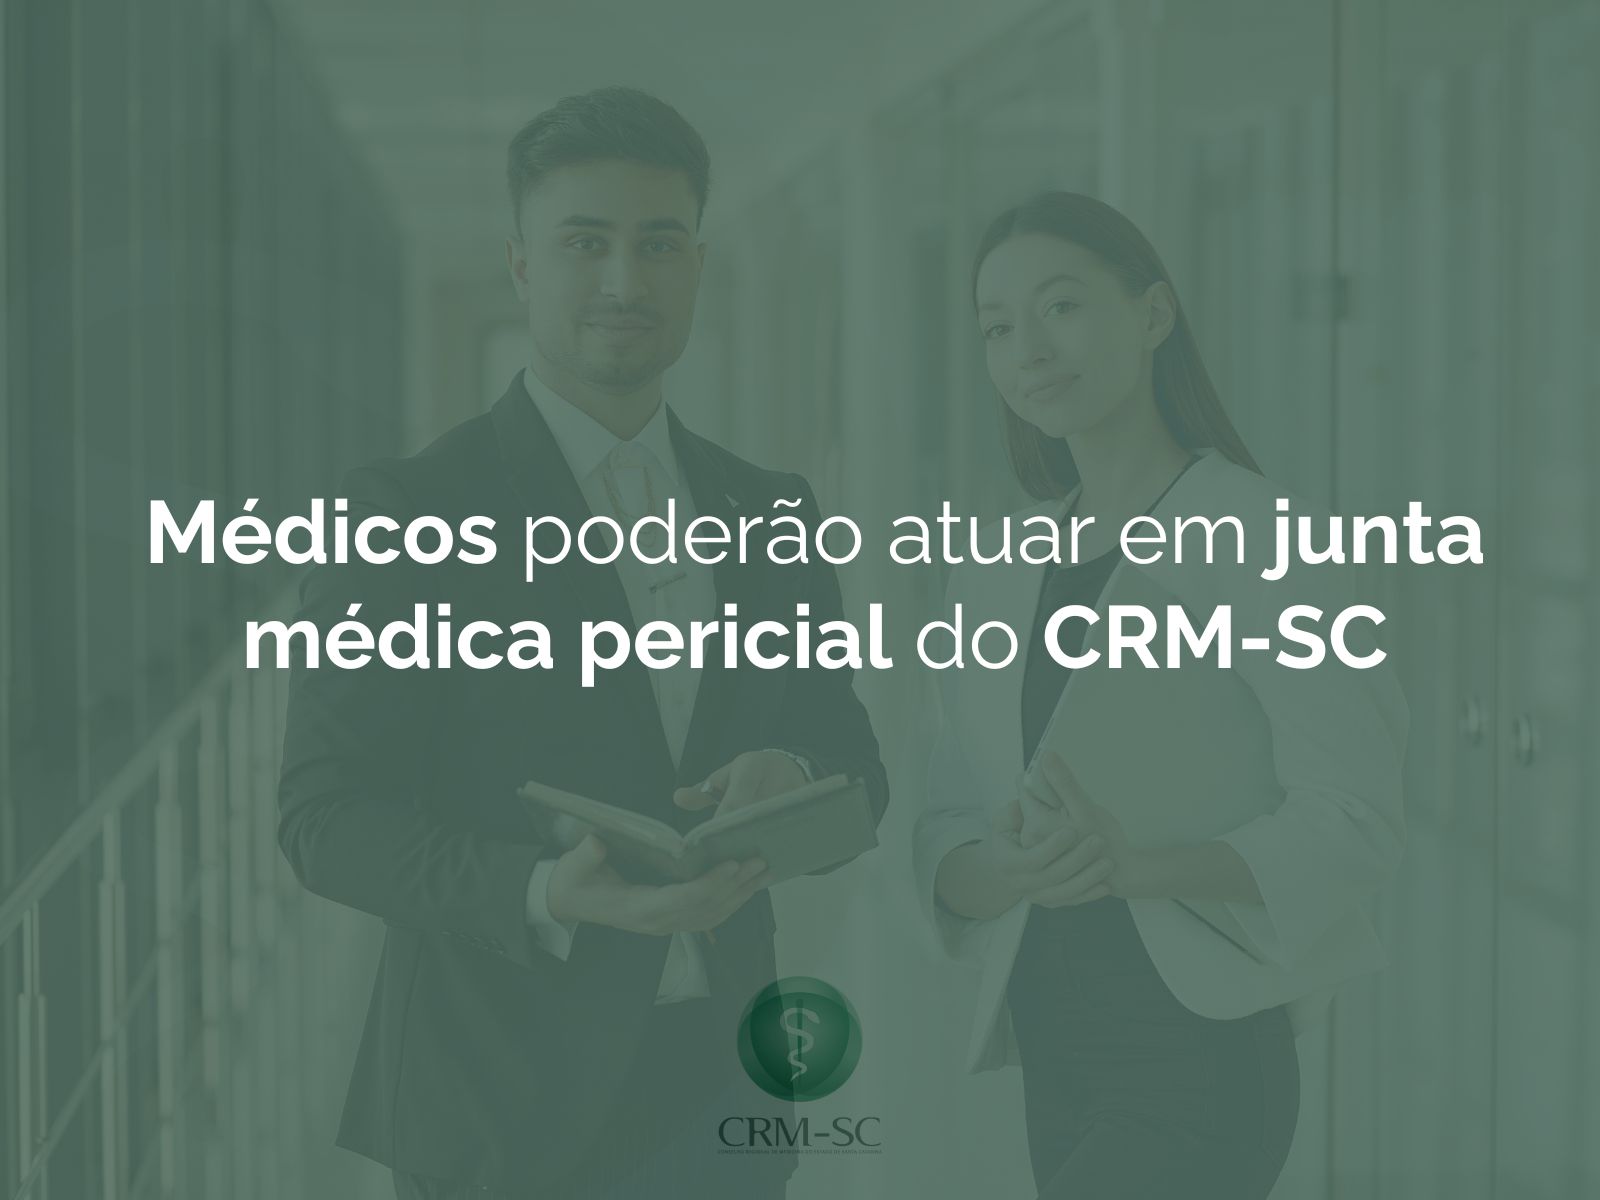 Médicos podem atuar em juntas médicas periciais do CRM-SC